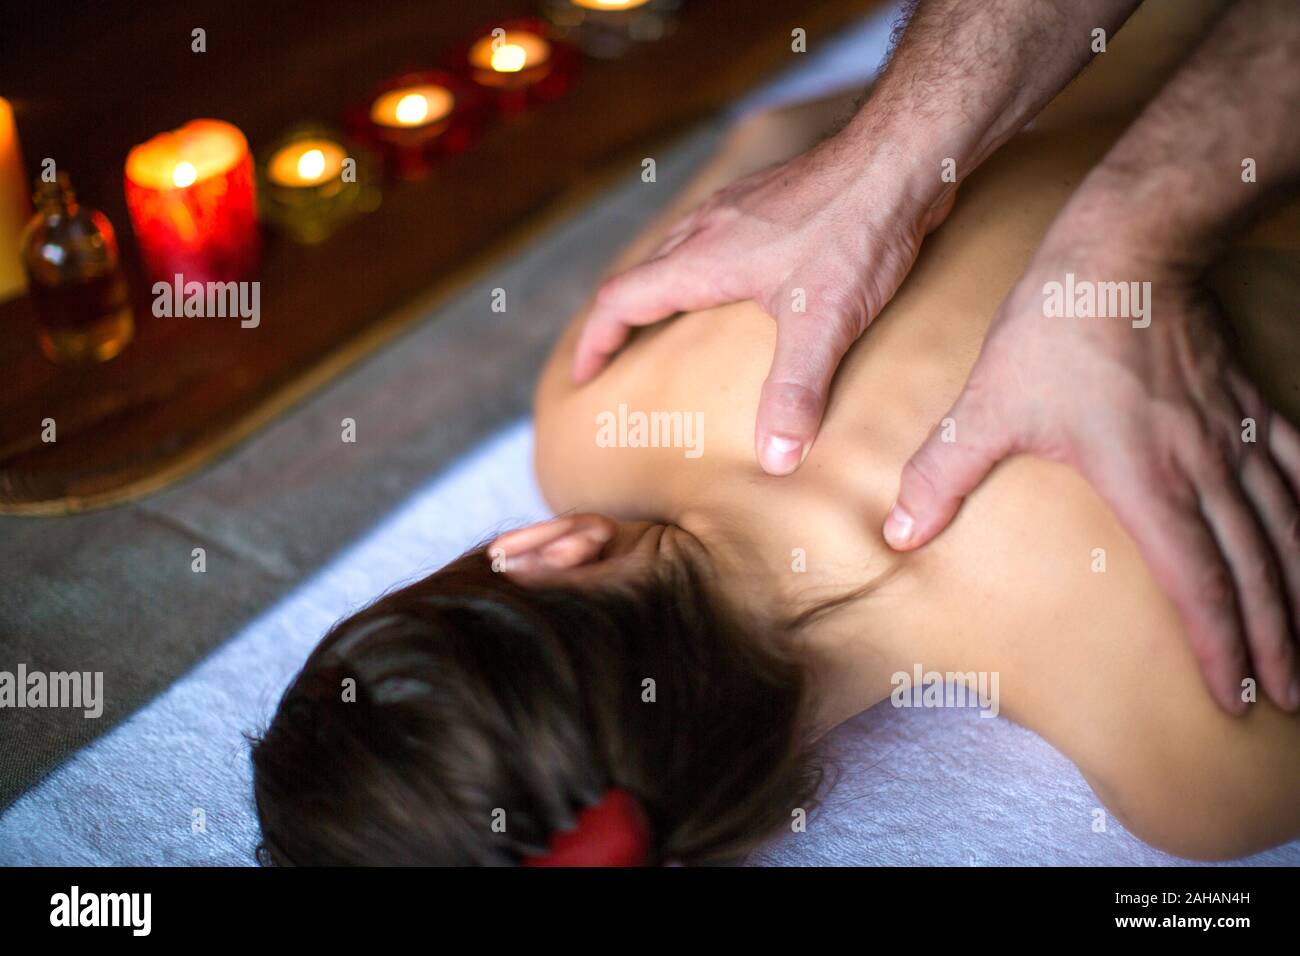 Männer Hände machen eine therapeutische Massage für ein Mädchen auf einer Massageliege in einer Massage Spa mit dunklen Beleuchtung liegen. Gesundheit, Wellness, und anhand von quantitativen Simulatio entspannen Stockfoto